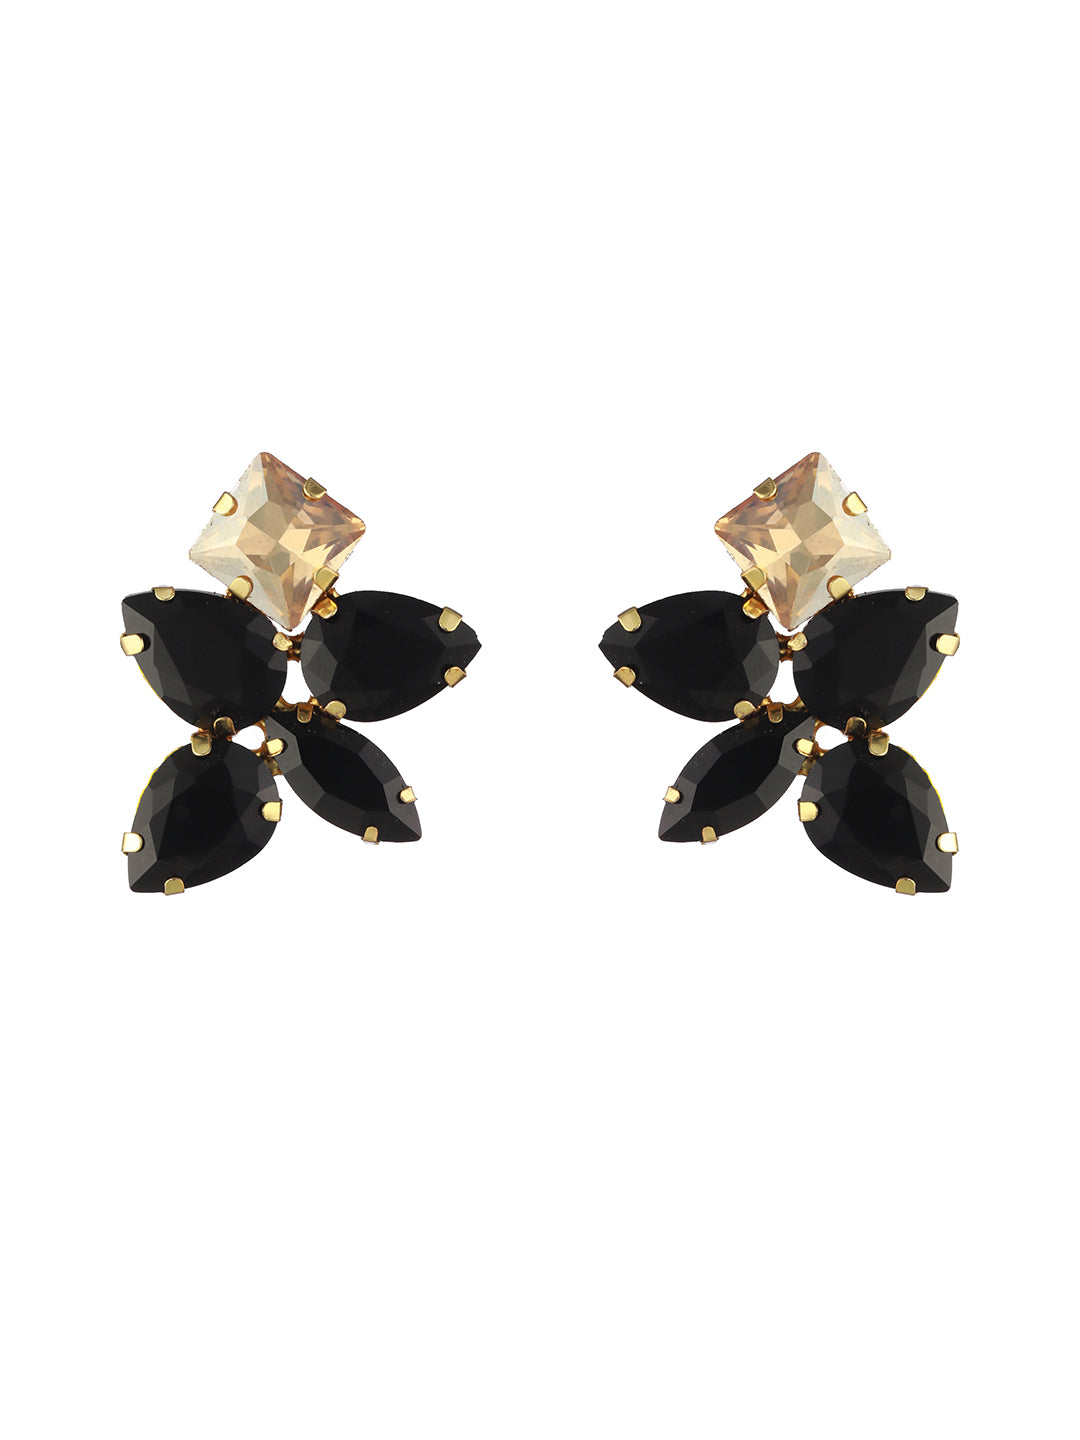 Elegant Black & Golden Stone Studded Gold-Plated Earrings